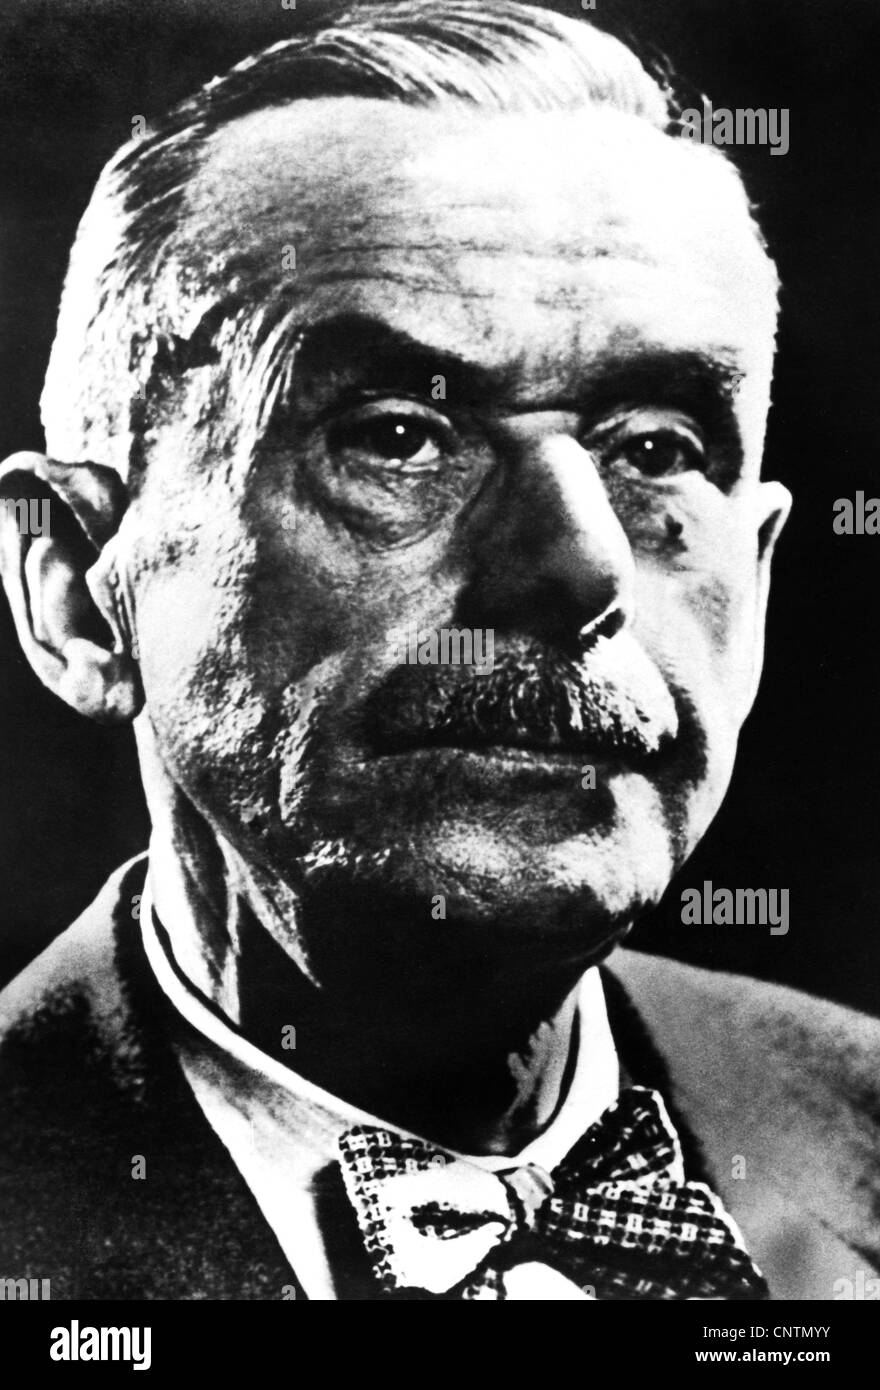 Mann, Thomas, 6.6.1875 - 12.8.1955, German author / writer, Nobel Prize in Literature 1929, portrait, circa 1950, Stock Photo